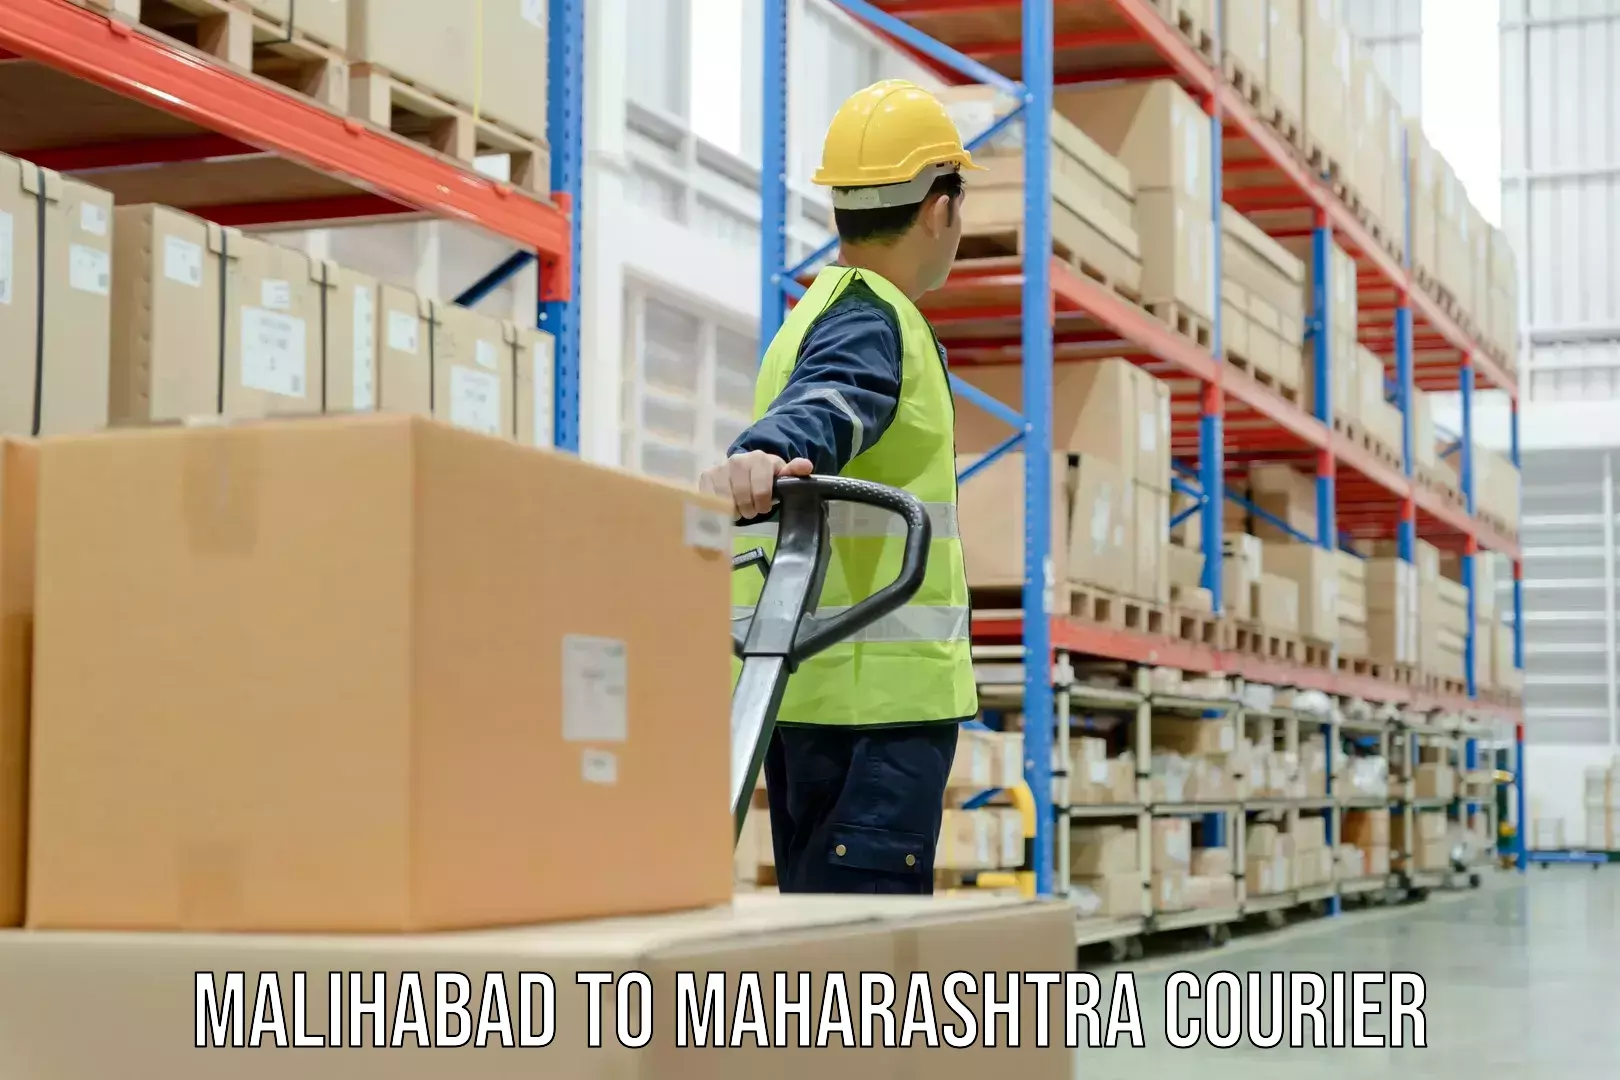 Quality courier partnerships Malihabad to Mumbai Port